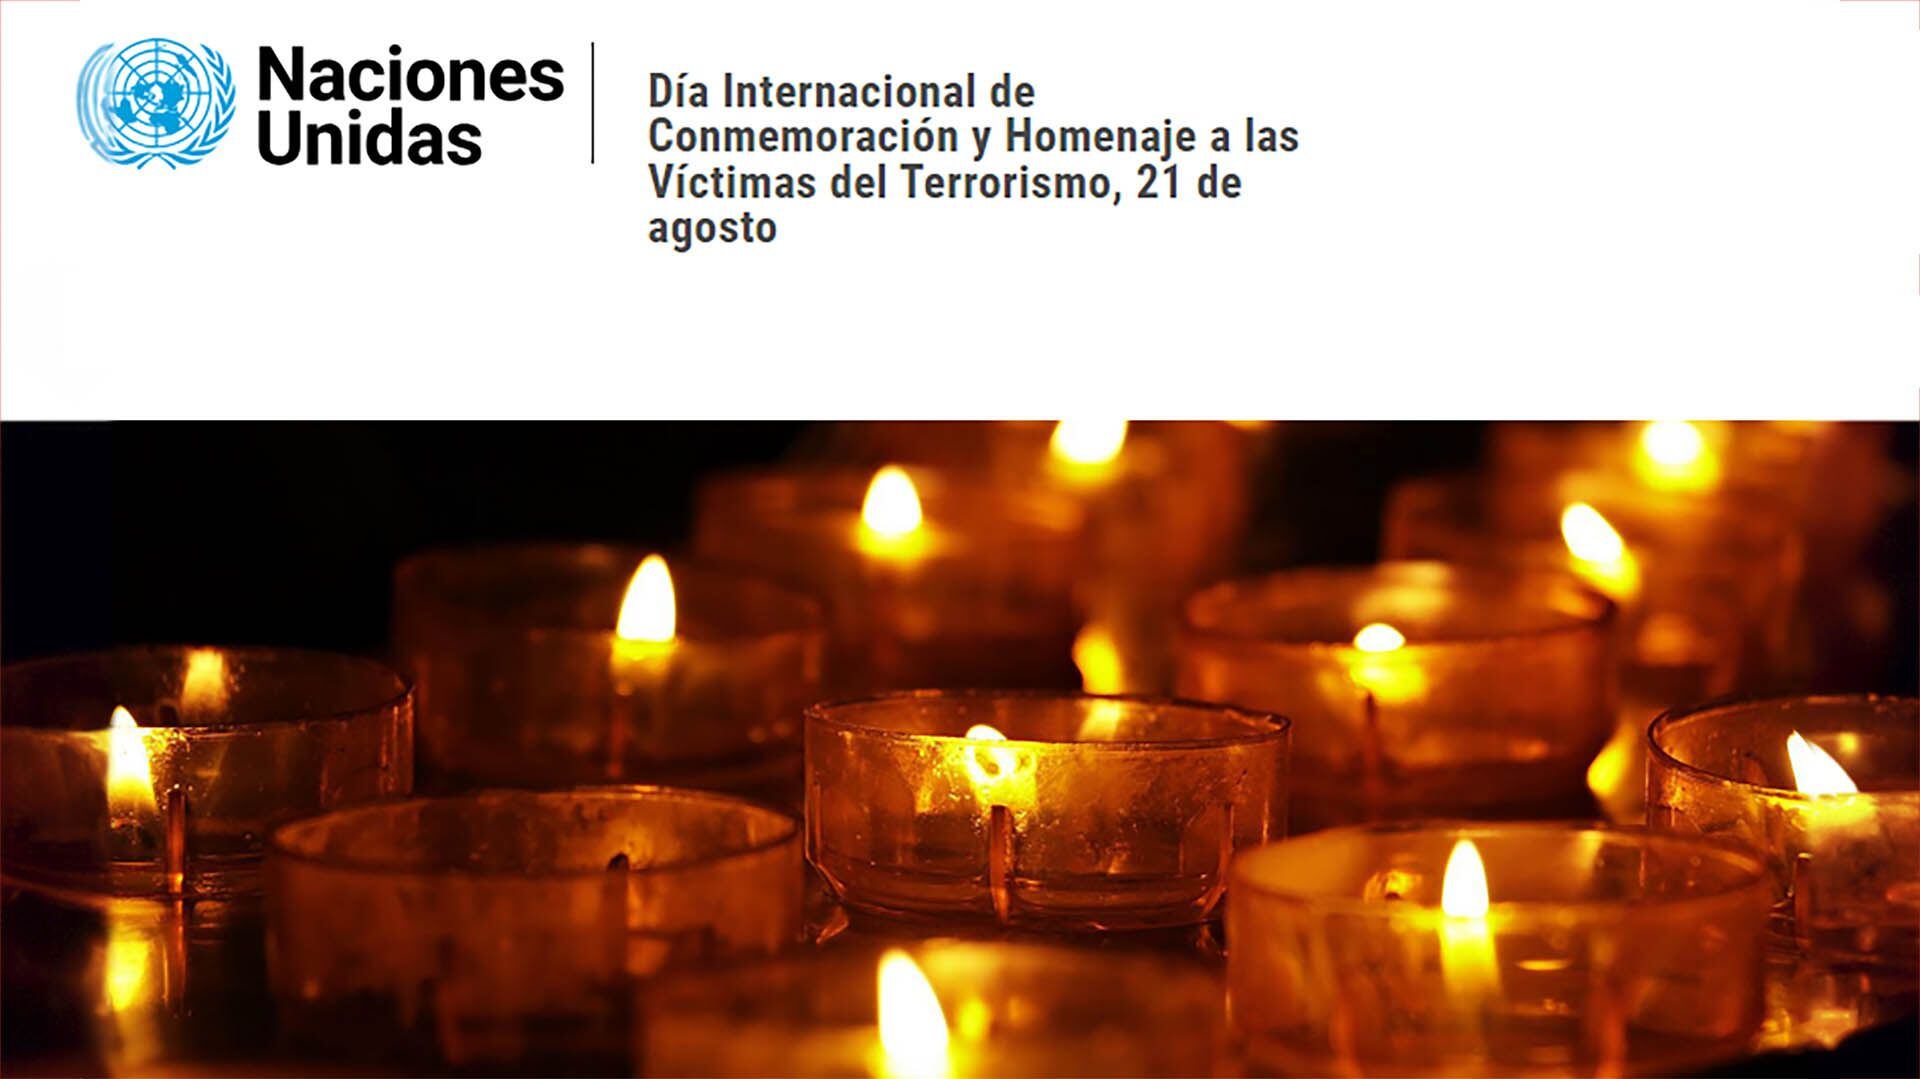 El Día de Conmemoración y Homenaje a las Vícitmas del Terrorismo fue instituido por Naciones Unidas en 2017 mediante una resolución que invoca la responsbilidad de los Estados miembros en ese reconocimiento